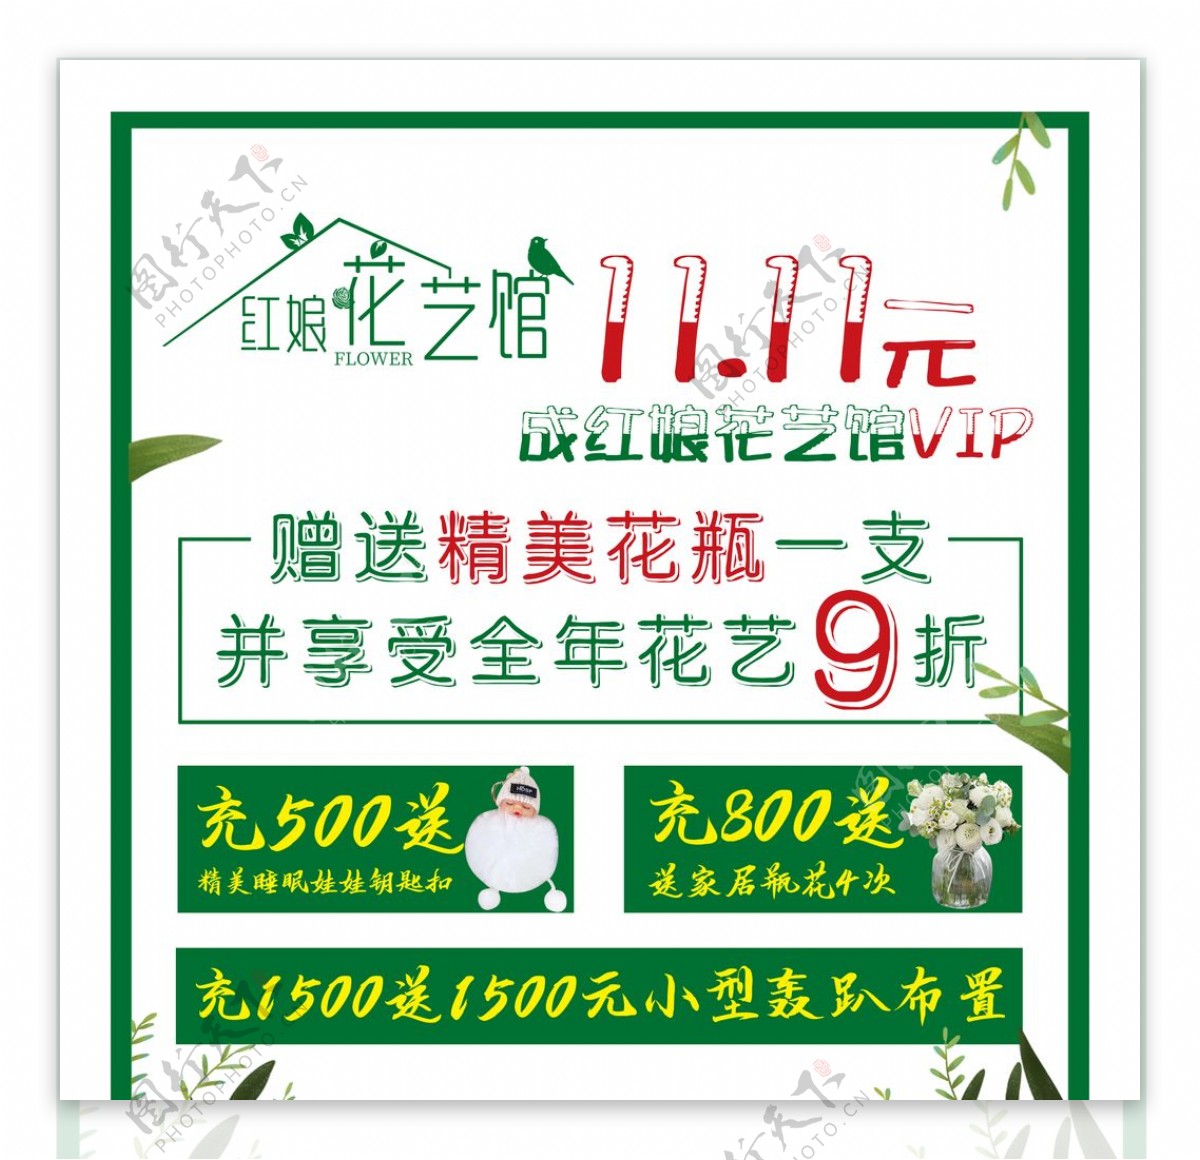 鲜花花艺馆活动宣传海报图片